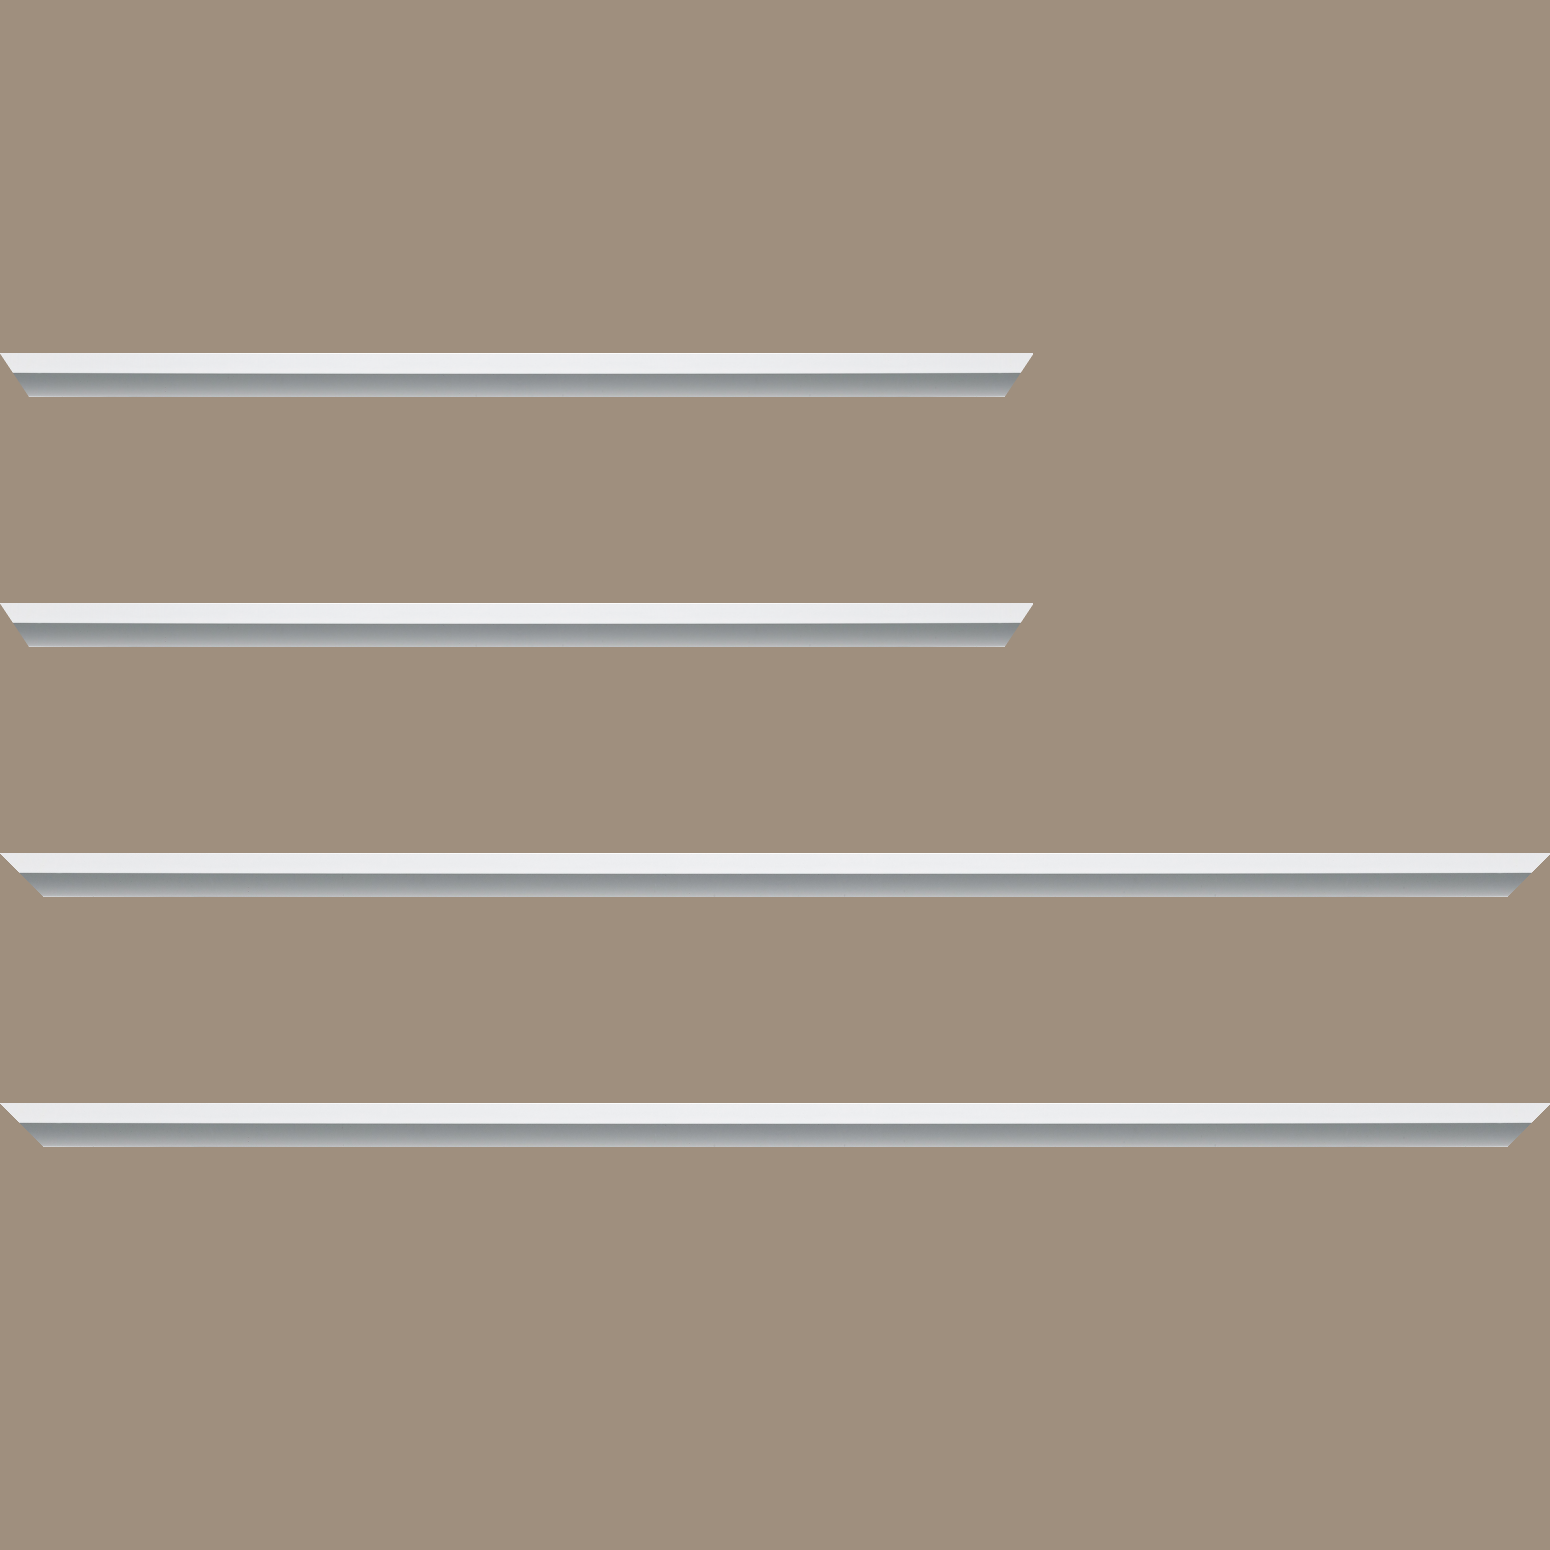 Baguette aluminium profil plat largeur 7mm, couleur blanc mat ,(le sujet qui sera glissé dans le cadre sera en retrait de 9mm de la face du cadre assurant un effet très contemporain) mise en place du sujet rapide et simple: assemblage du cadre par double équerre à vis (livré avec le système d'accrochage qui se glisse dans le profilé) encadrement non assemblé,  livré avec son sachet d'accessoires - 28x34